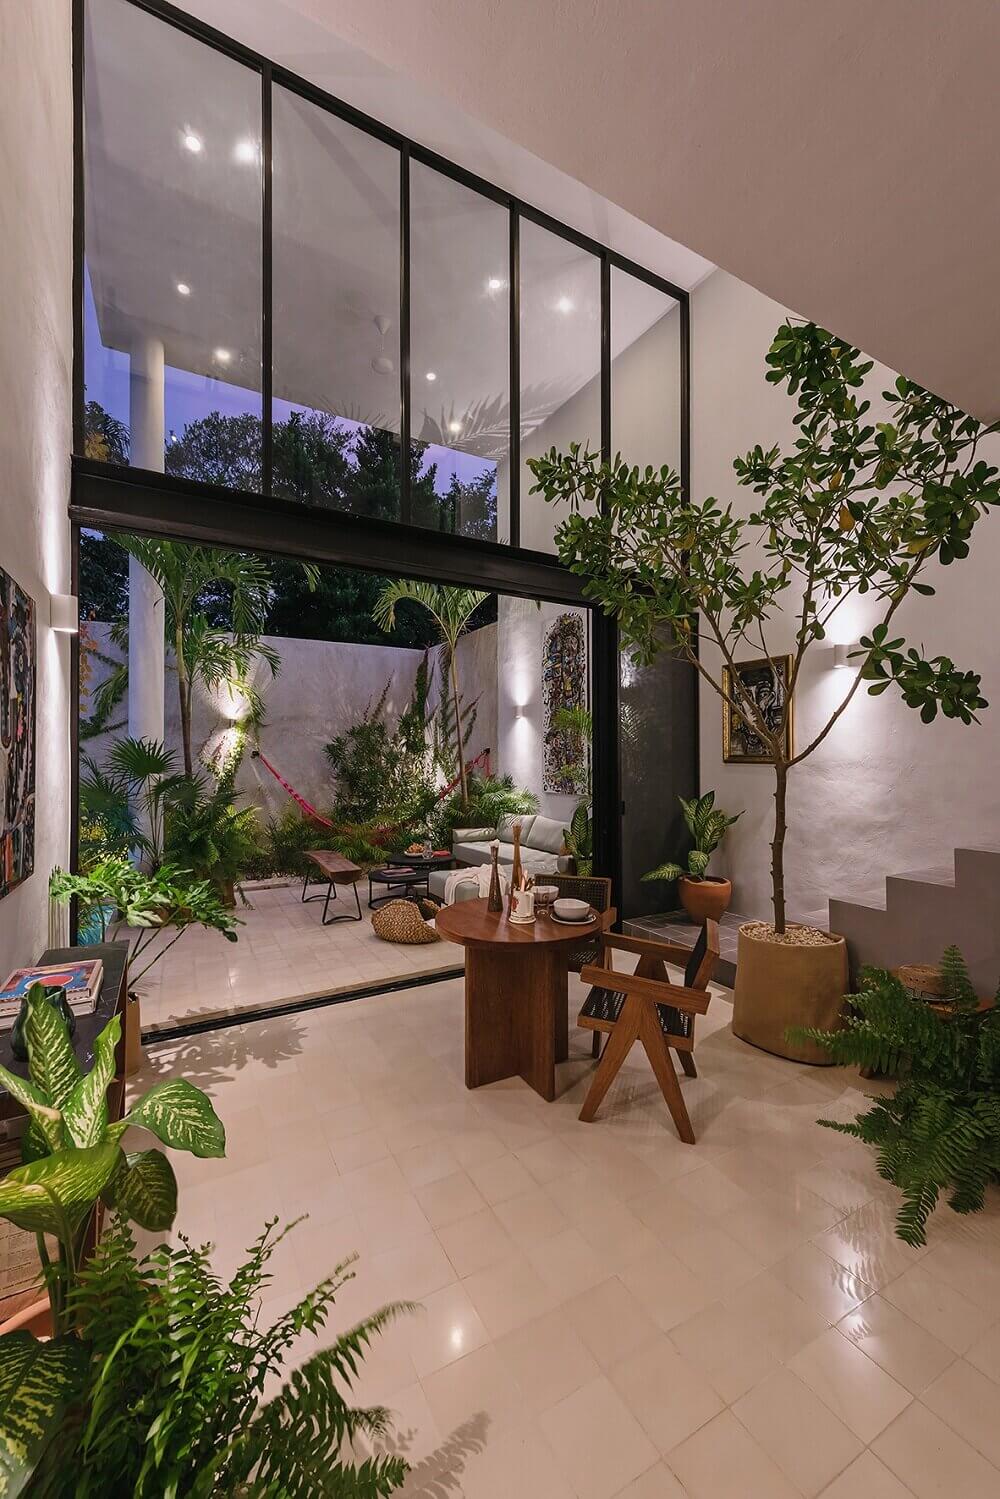 CasaHannah AnArchitecturalVillainMexico TheNordroom5 Casa Hannah | An Architectural Indoor/Outdoor Villa in Mexico